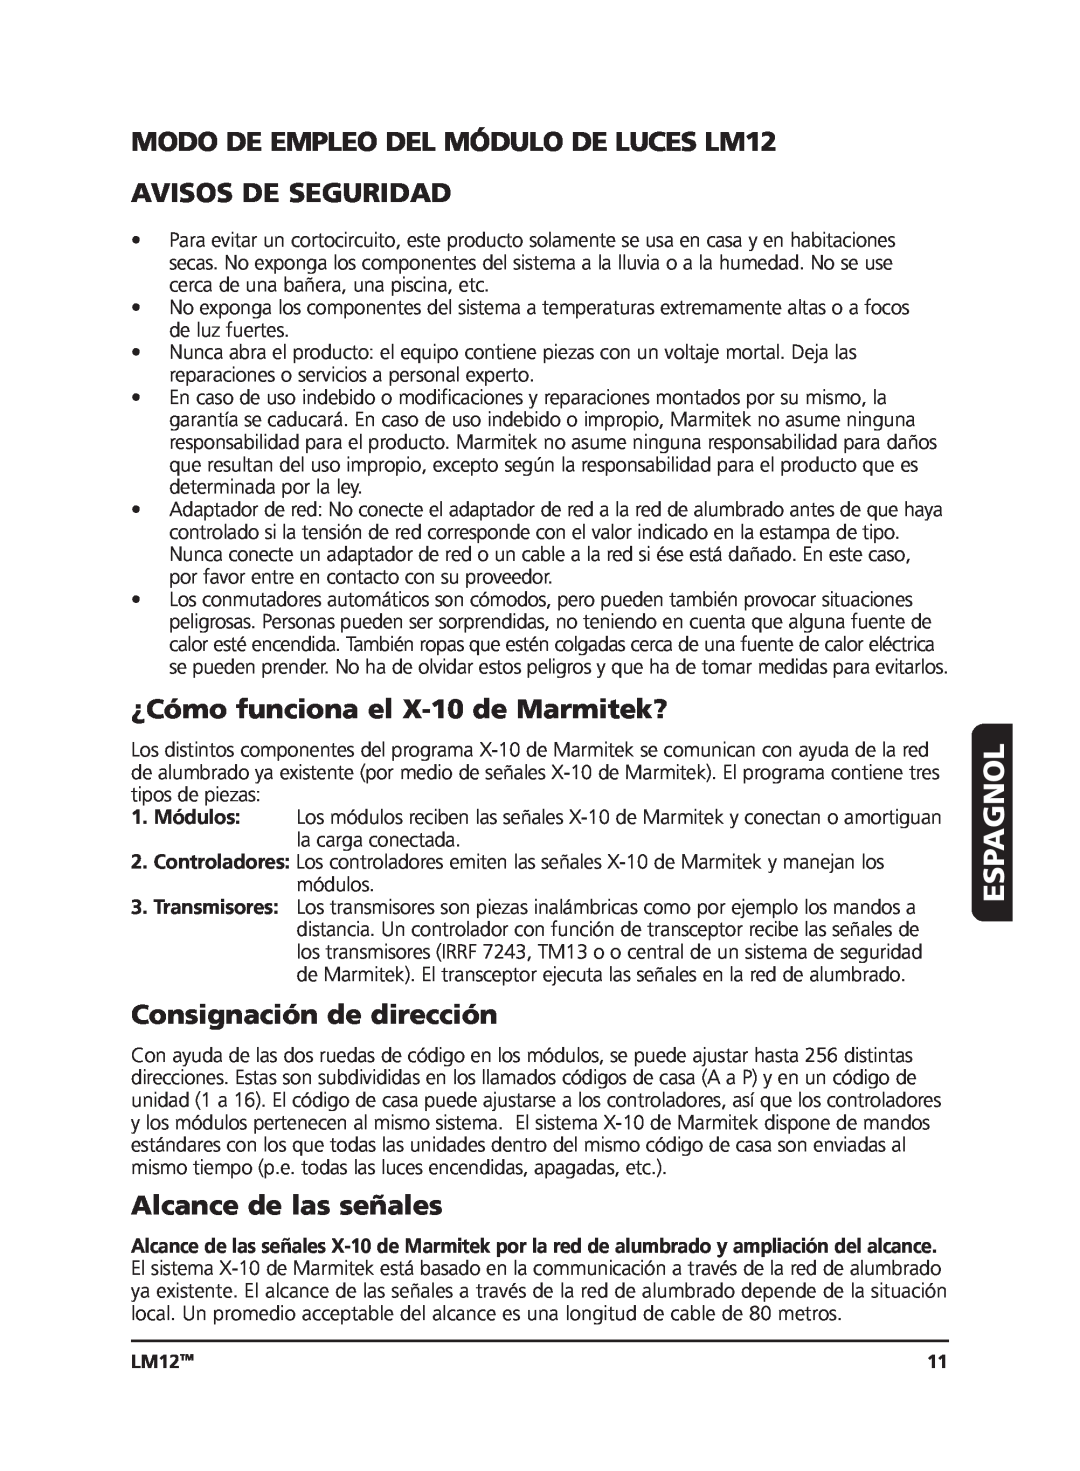 Marmitek Espagnol, MODO DE EMPLEO DEL MÓDULO DE LUCES LM12, Avisos De Seguridad, ¿Cómo funciona el X-10de Marmitek? 